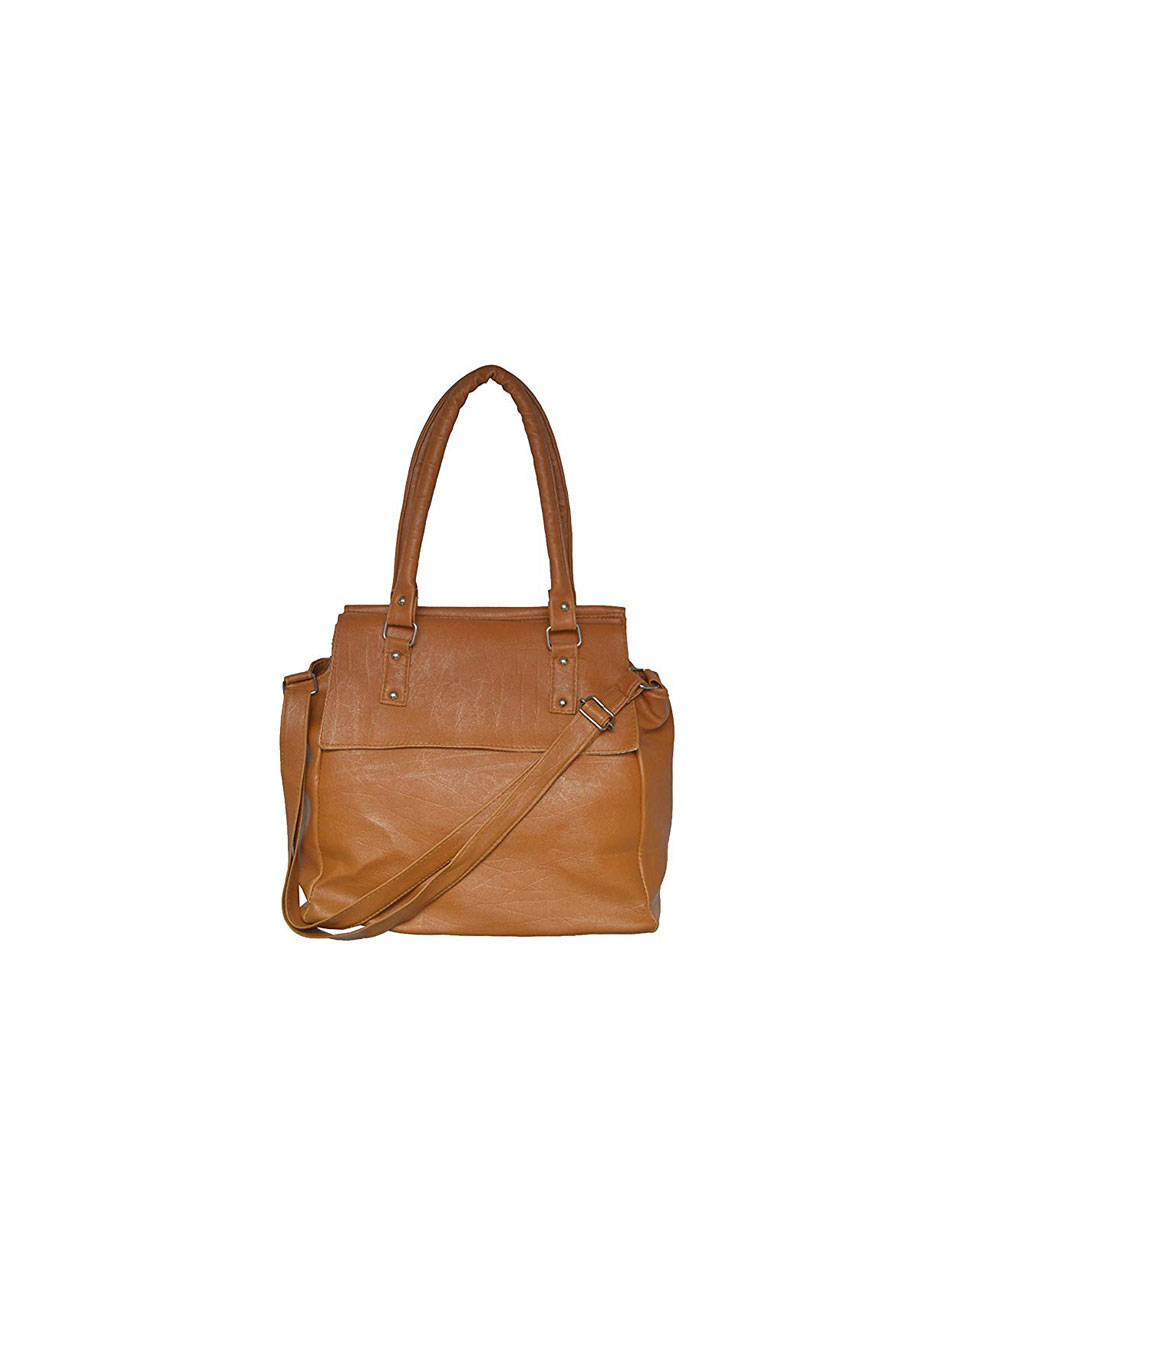 SK NOOR HAND BAG Casual Shoulder Bag Women & Girl`s Handbag